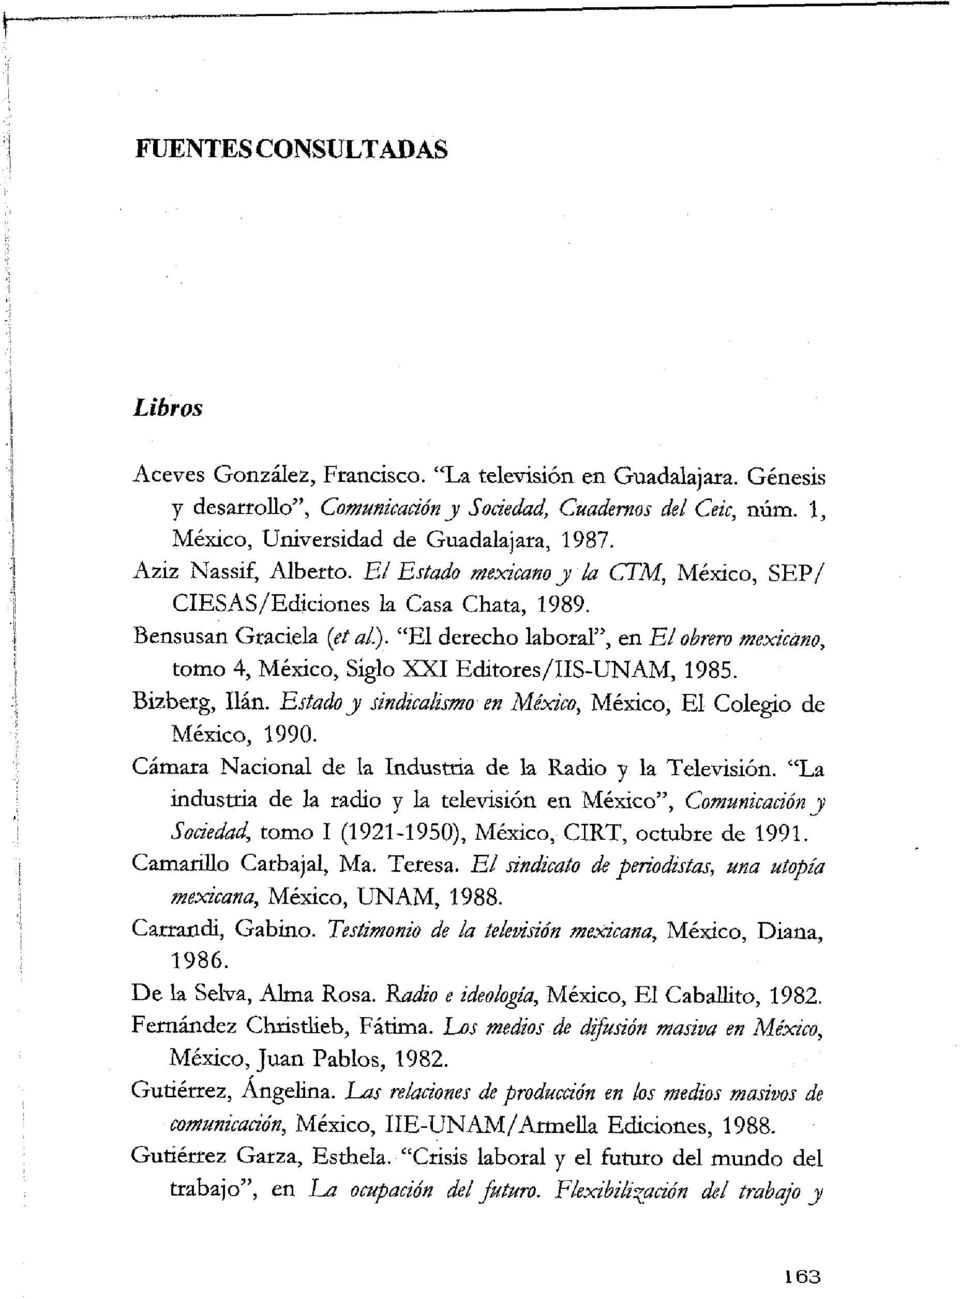 "El derecho laboral", en El obrero mexkano, tomo 4, Mexico, Siglo XXI E&tores/IIS-UNAM, 1985. Bizberg, Ilan. Estado y sindicalimo en Mexico, Mexico, El Colegio de Mexico, 1990.